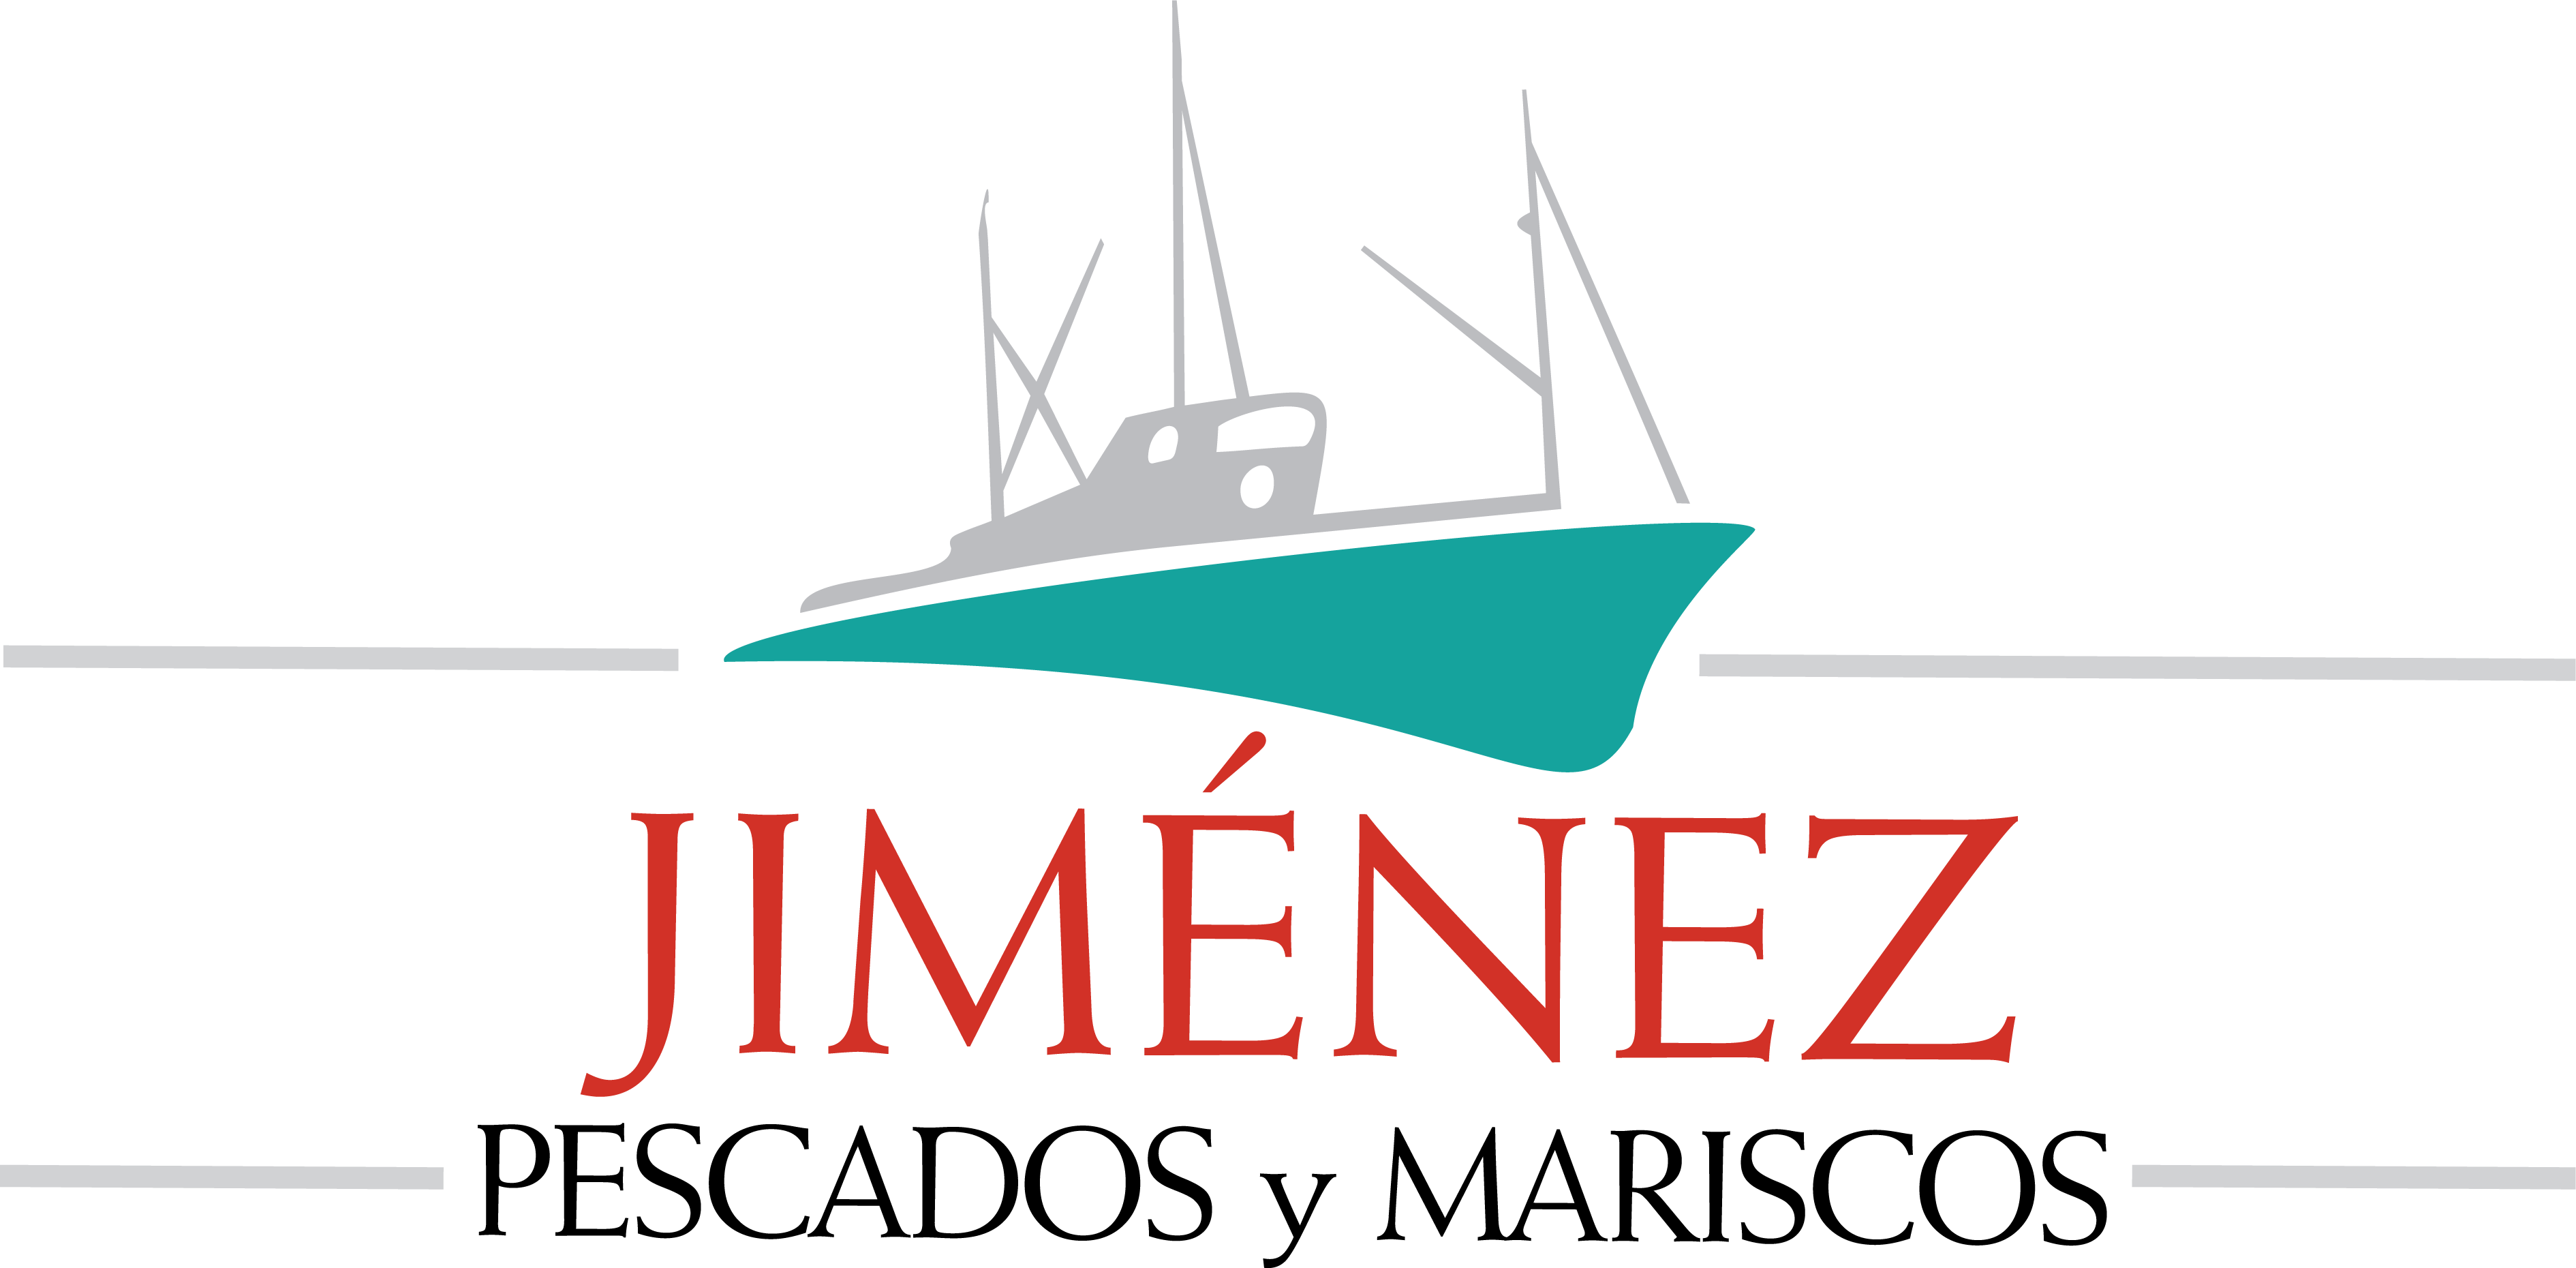 Pescados y mariscos Jiménez